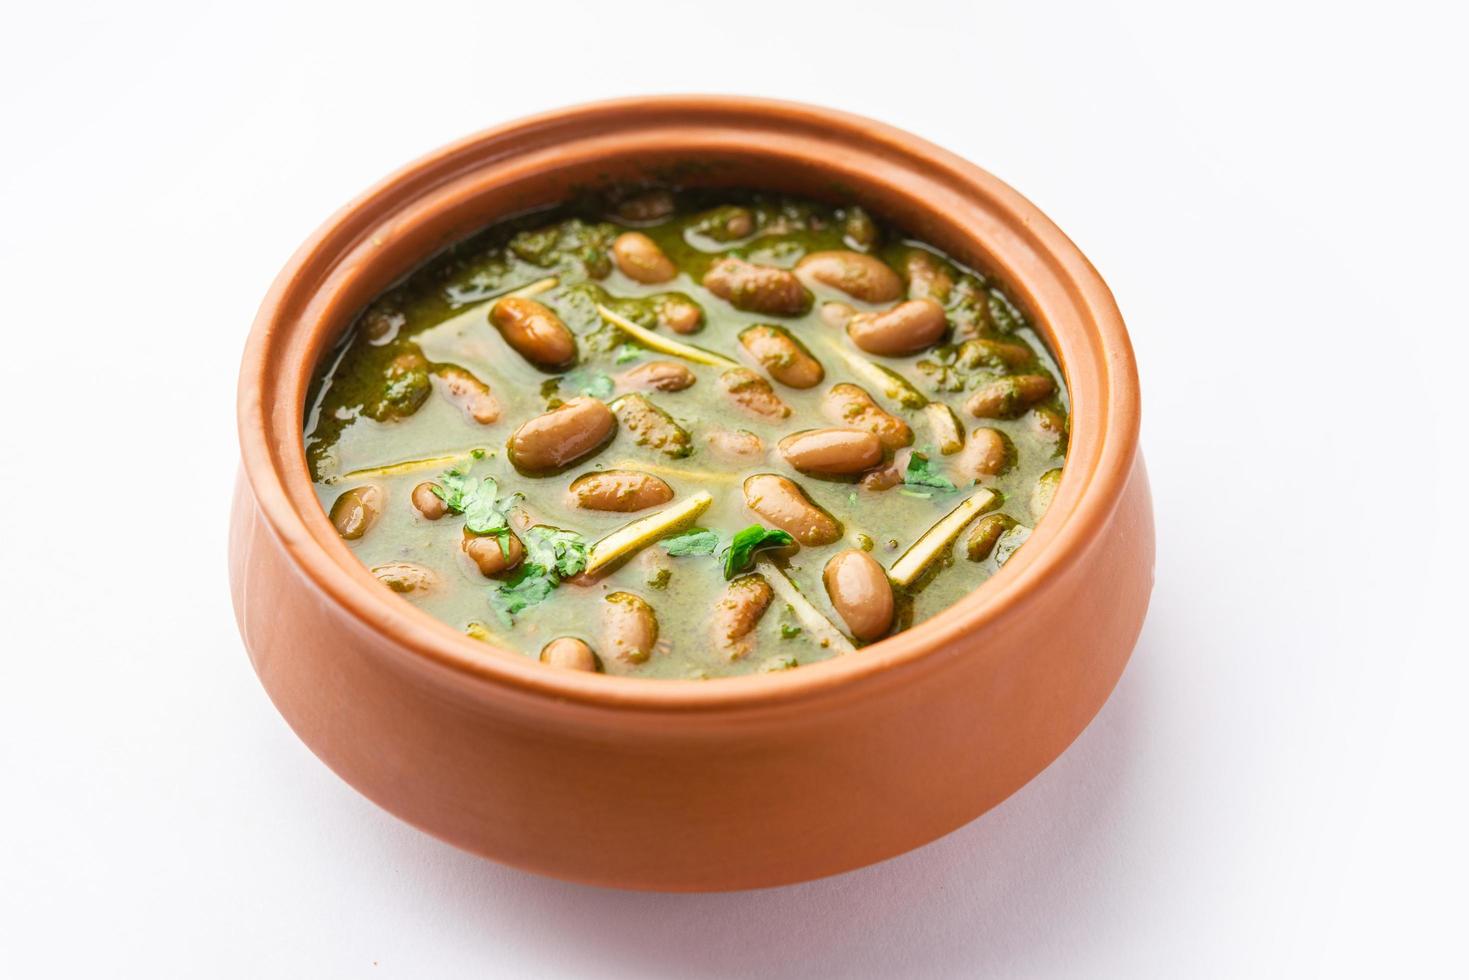 palak rajma masala es un curry indio preparado con frijoles rojos y espinacas cocinadas con especias foto